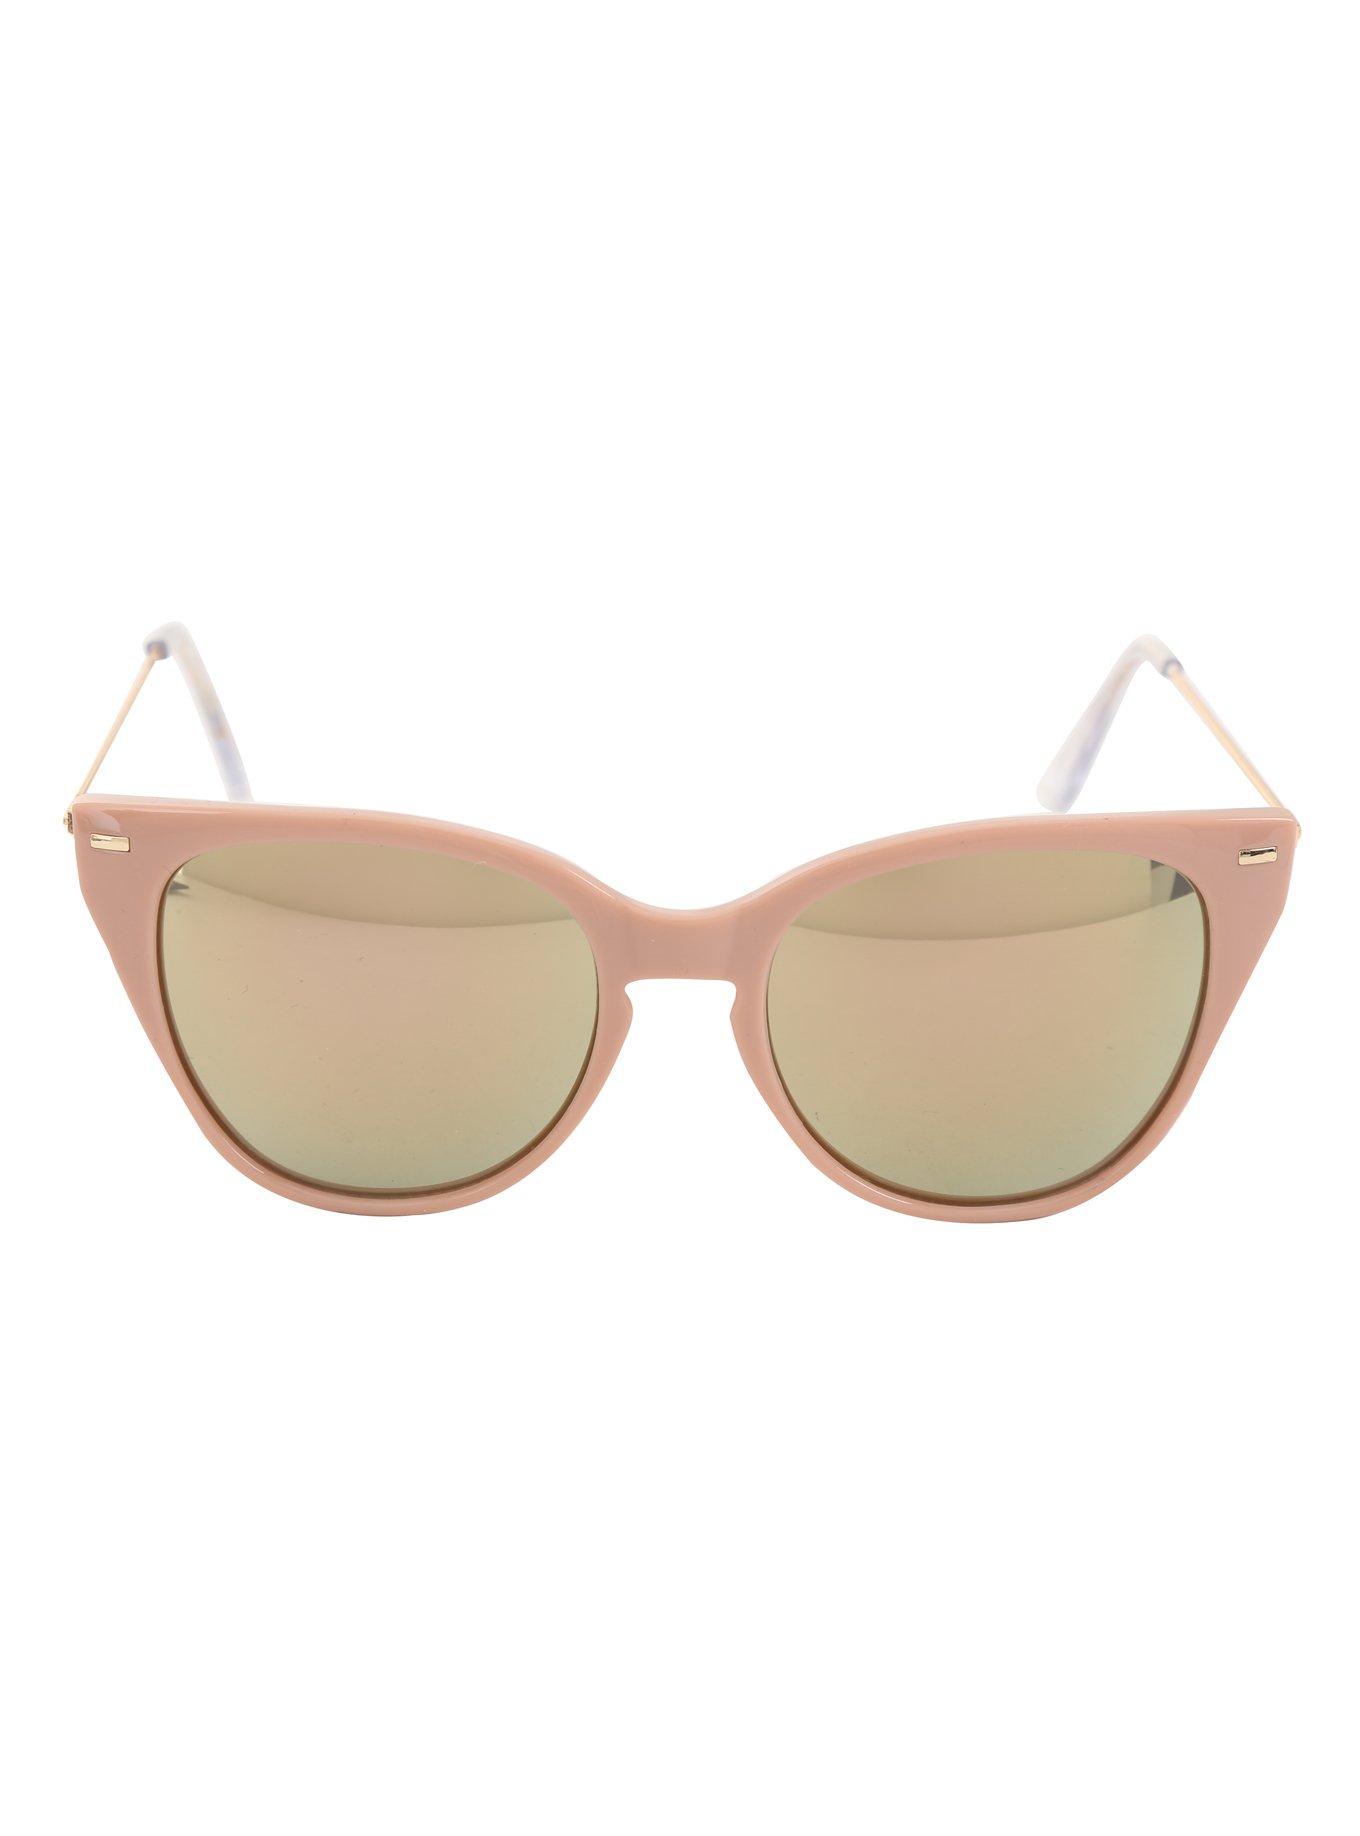 Blush Mirrored Lens Cat Eye Sunglasses, , alternate